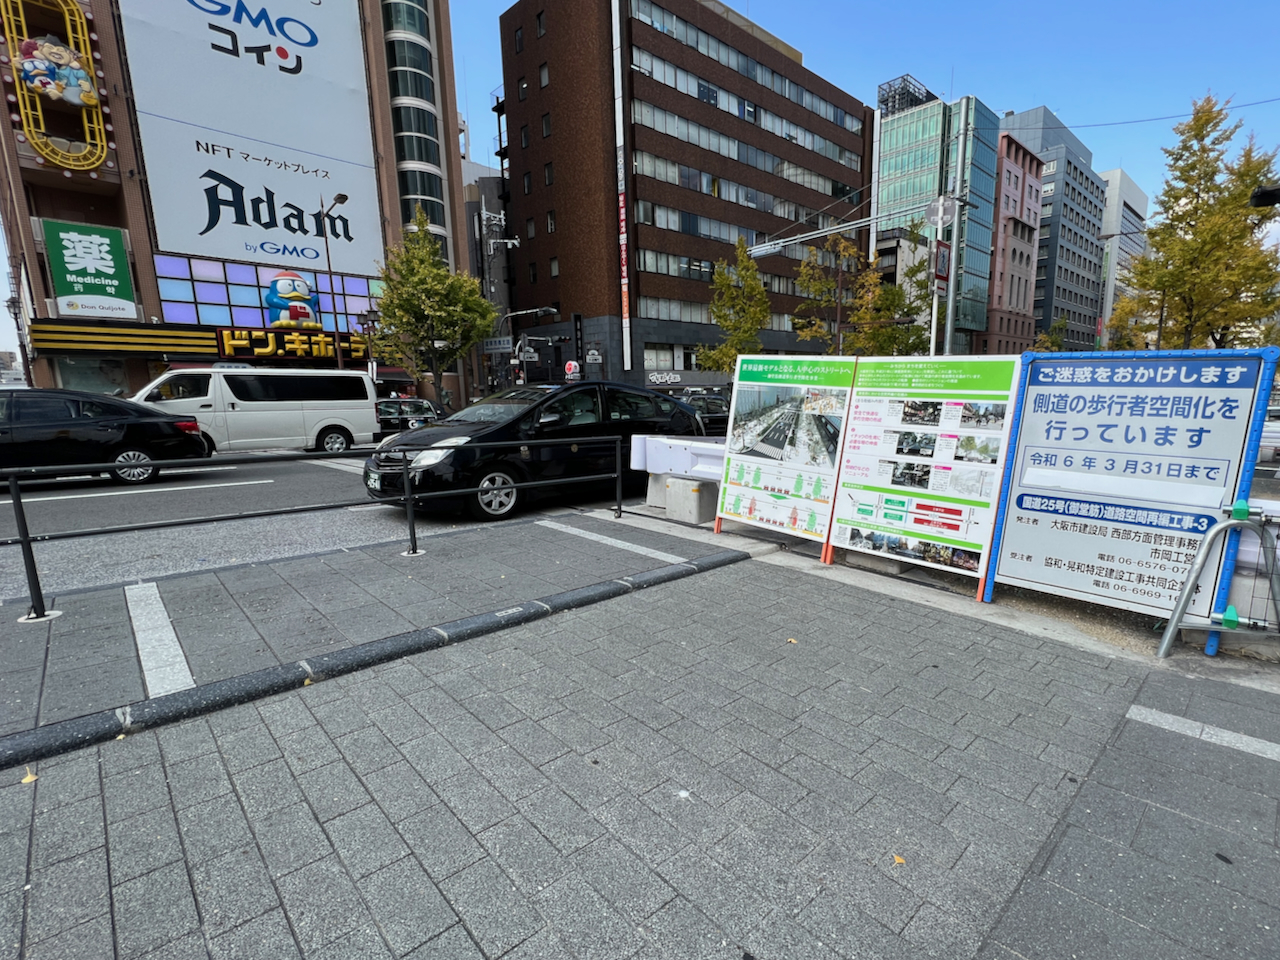  大阪の中心を走る日本最大の一方通行路「御堂筋」の再編が進んでいる